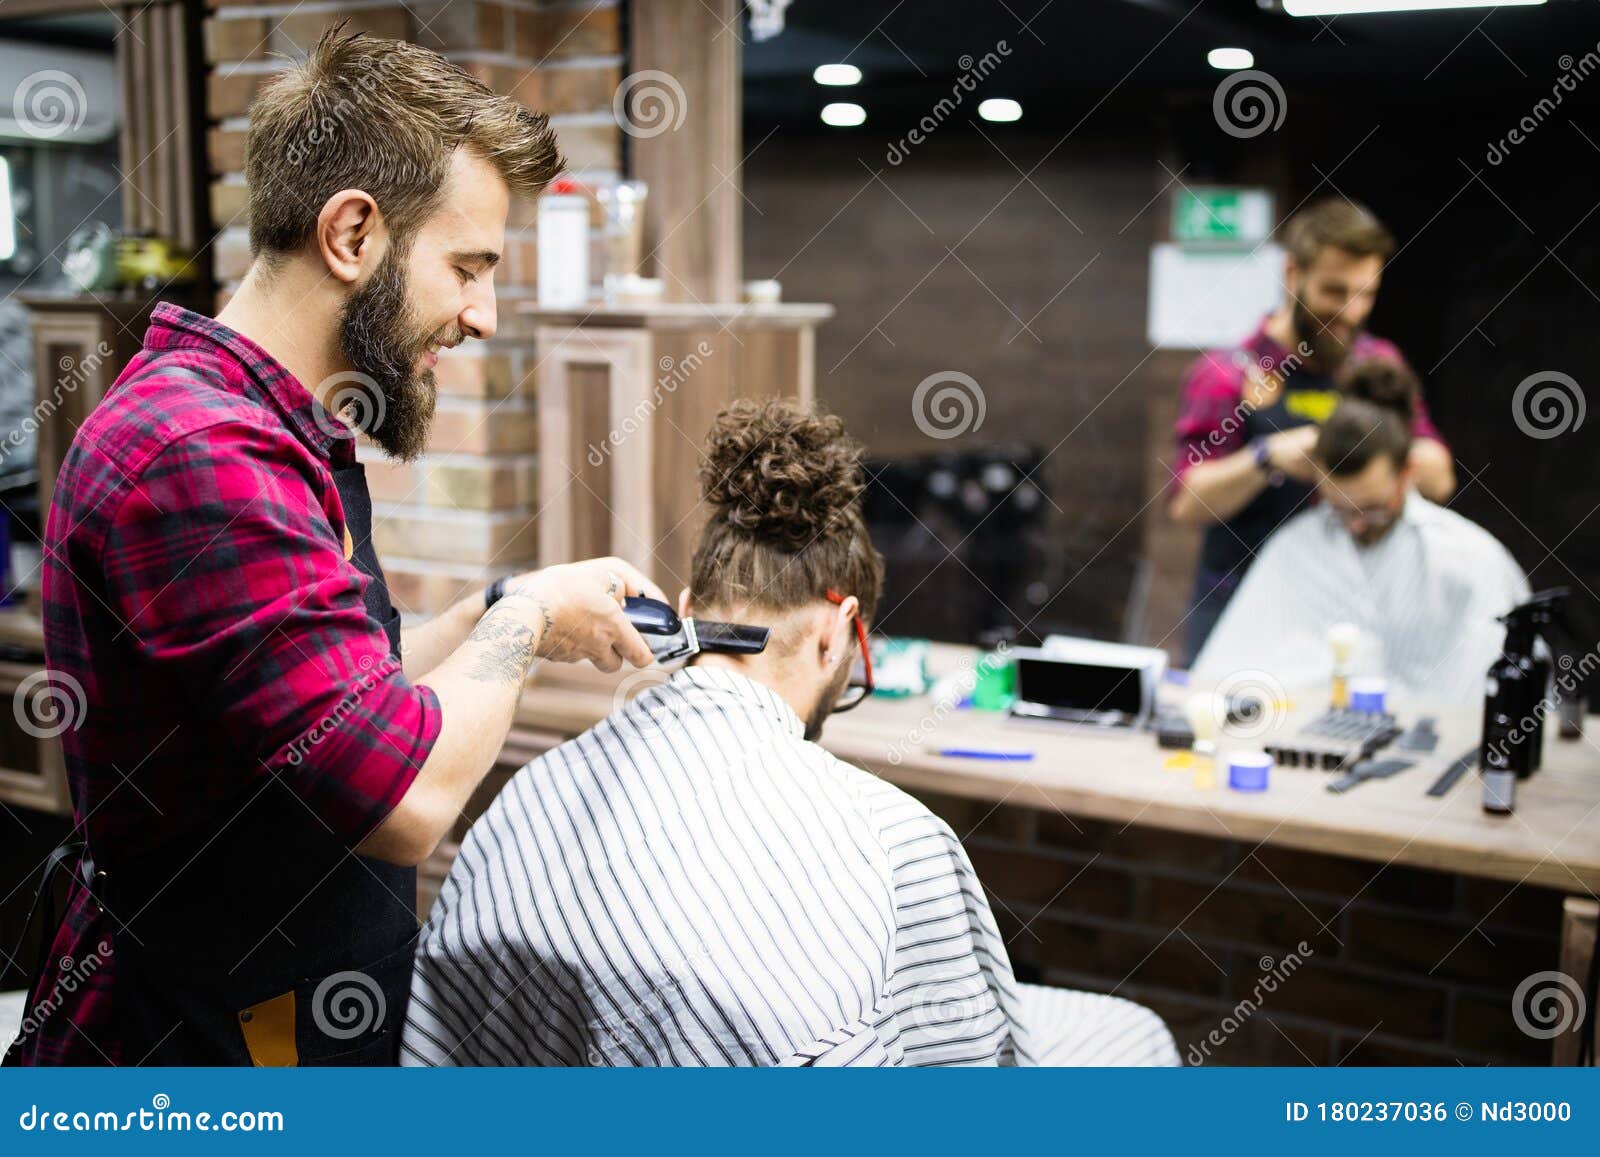 clippers haircut salon